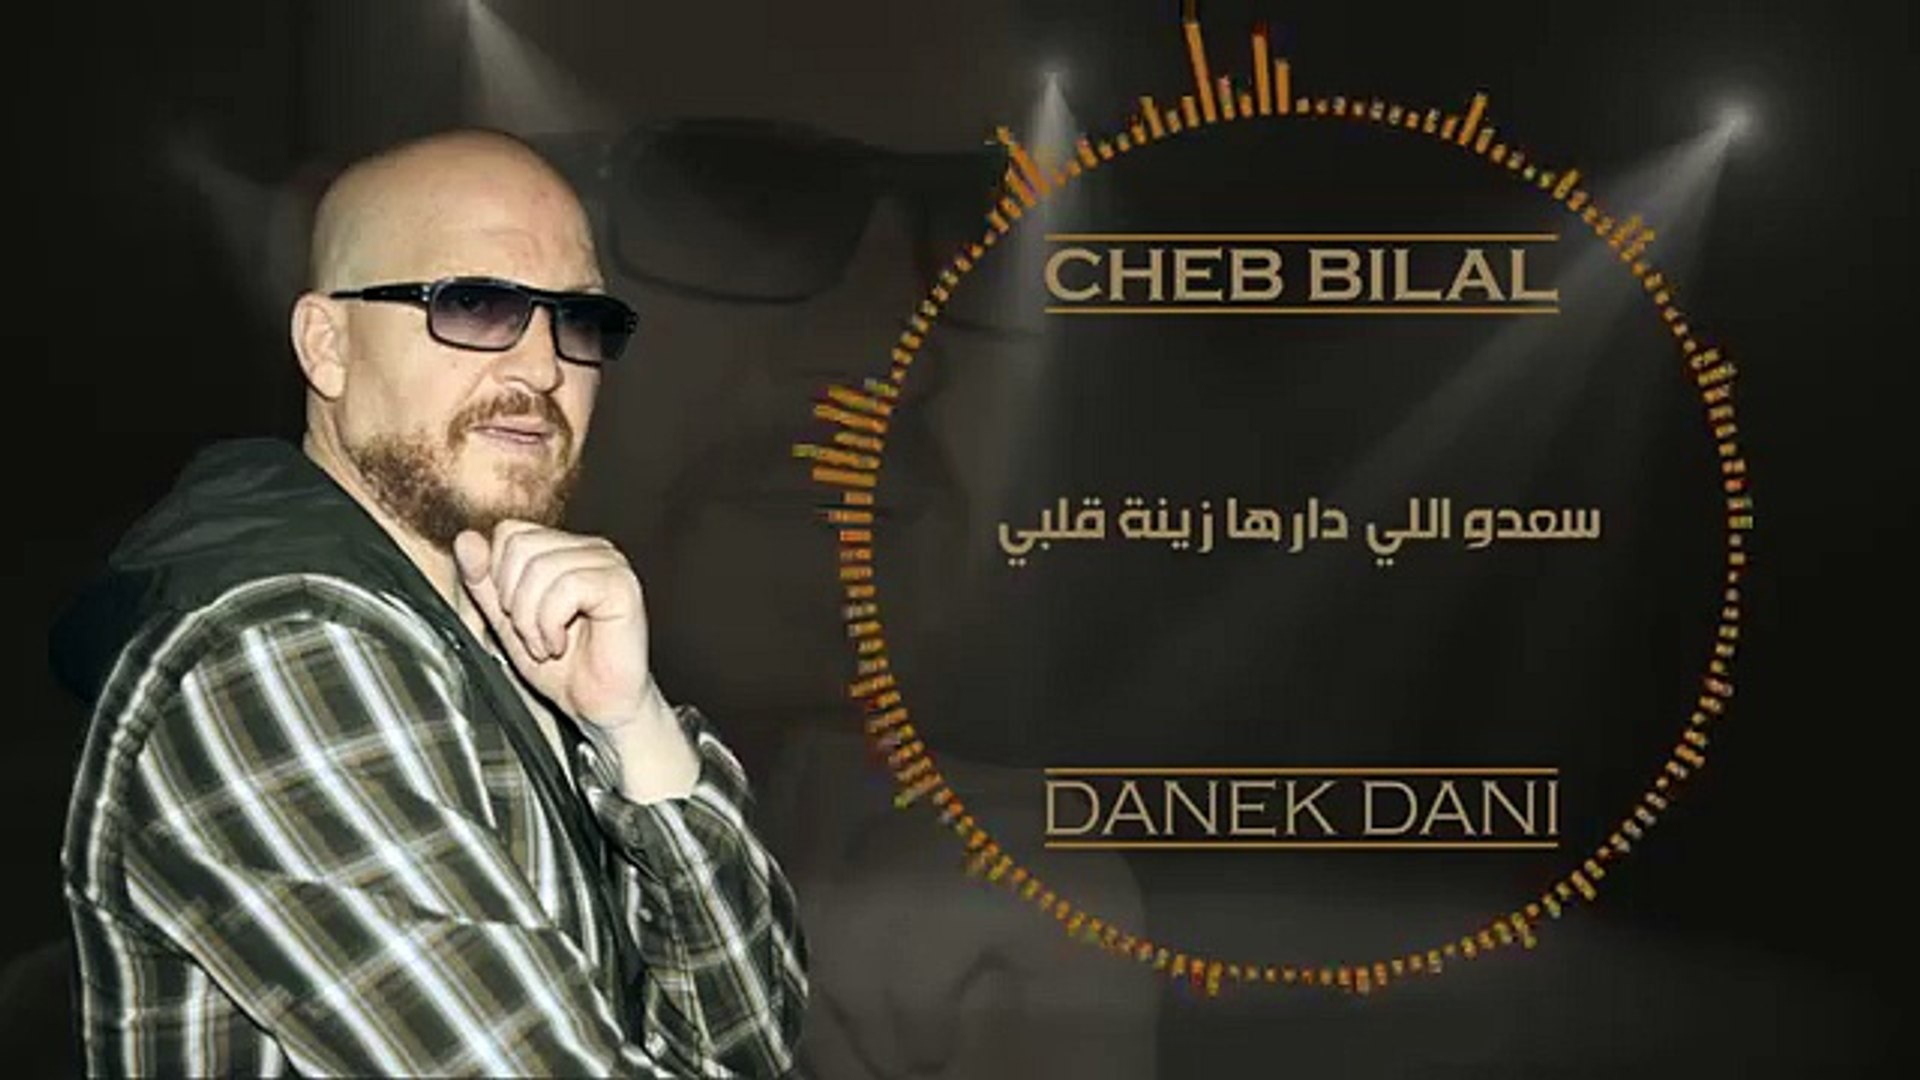 Cheb Bilal - Danek Dani 2015 - شاب بلال - دانك داني - فيديو Dailymotion